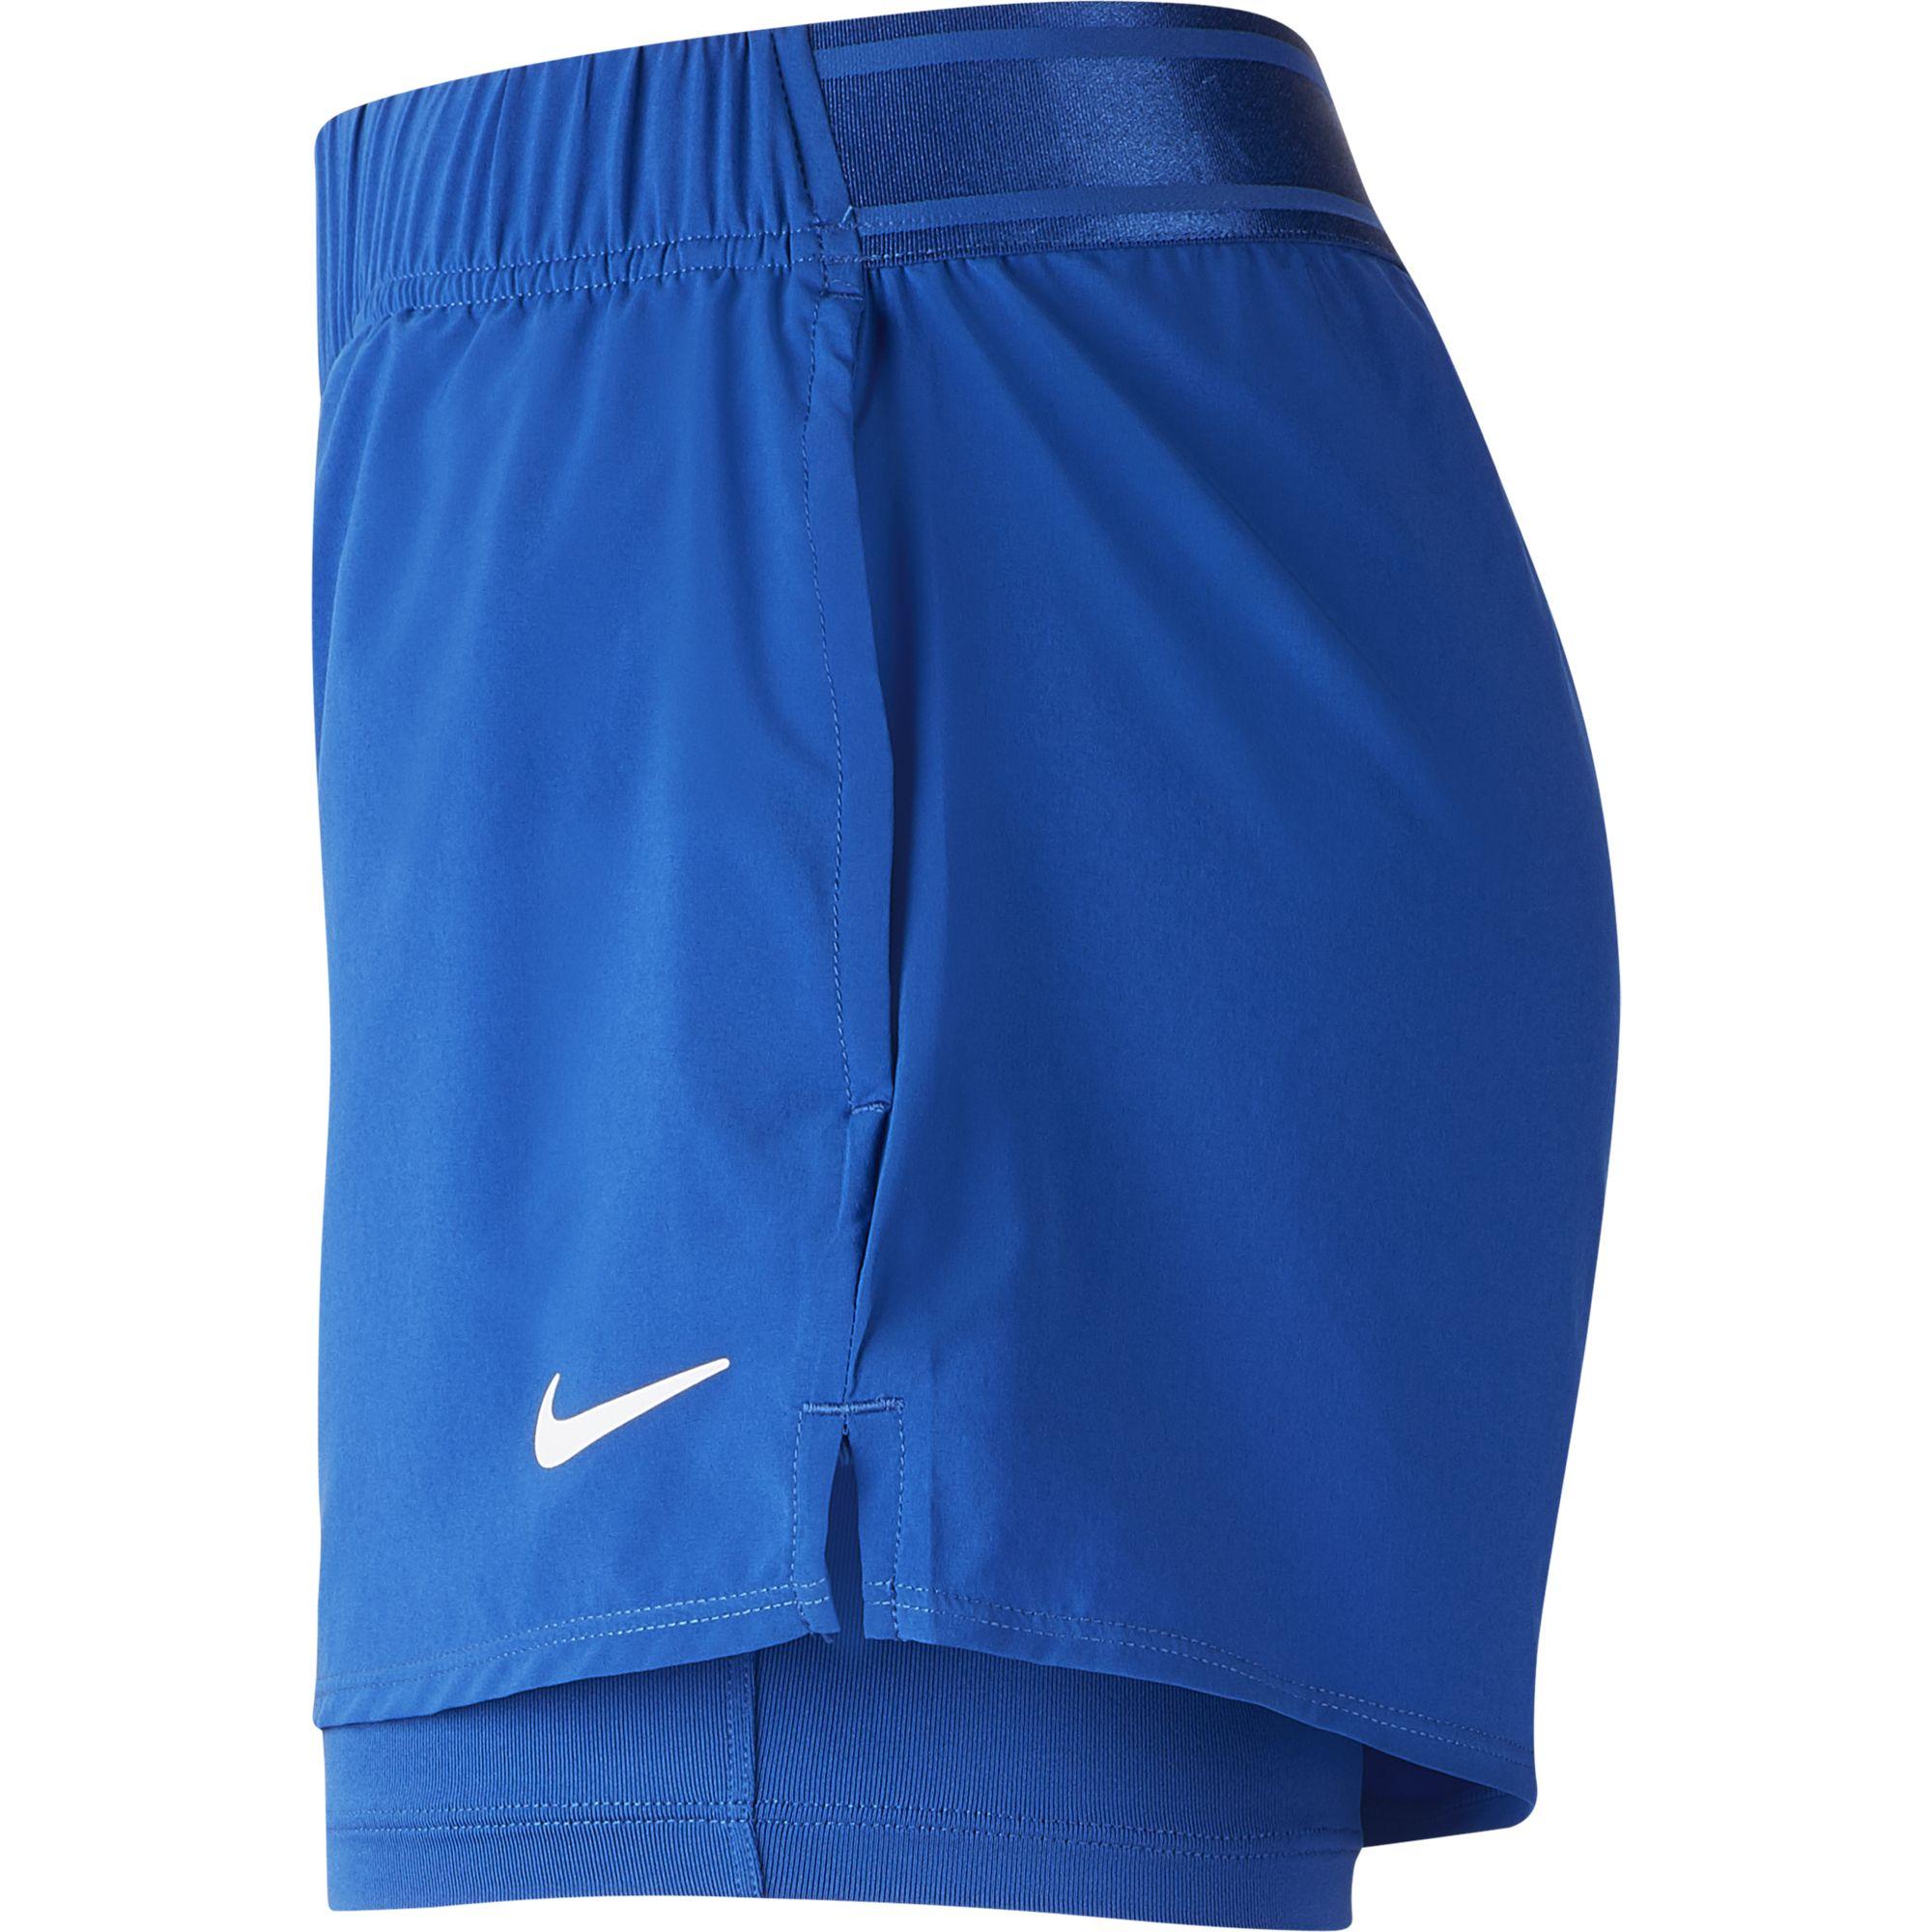 Nike Womens Flex Tennis Shorts - Game Royal - Tennisnuts.com